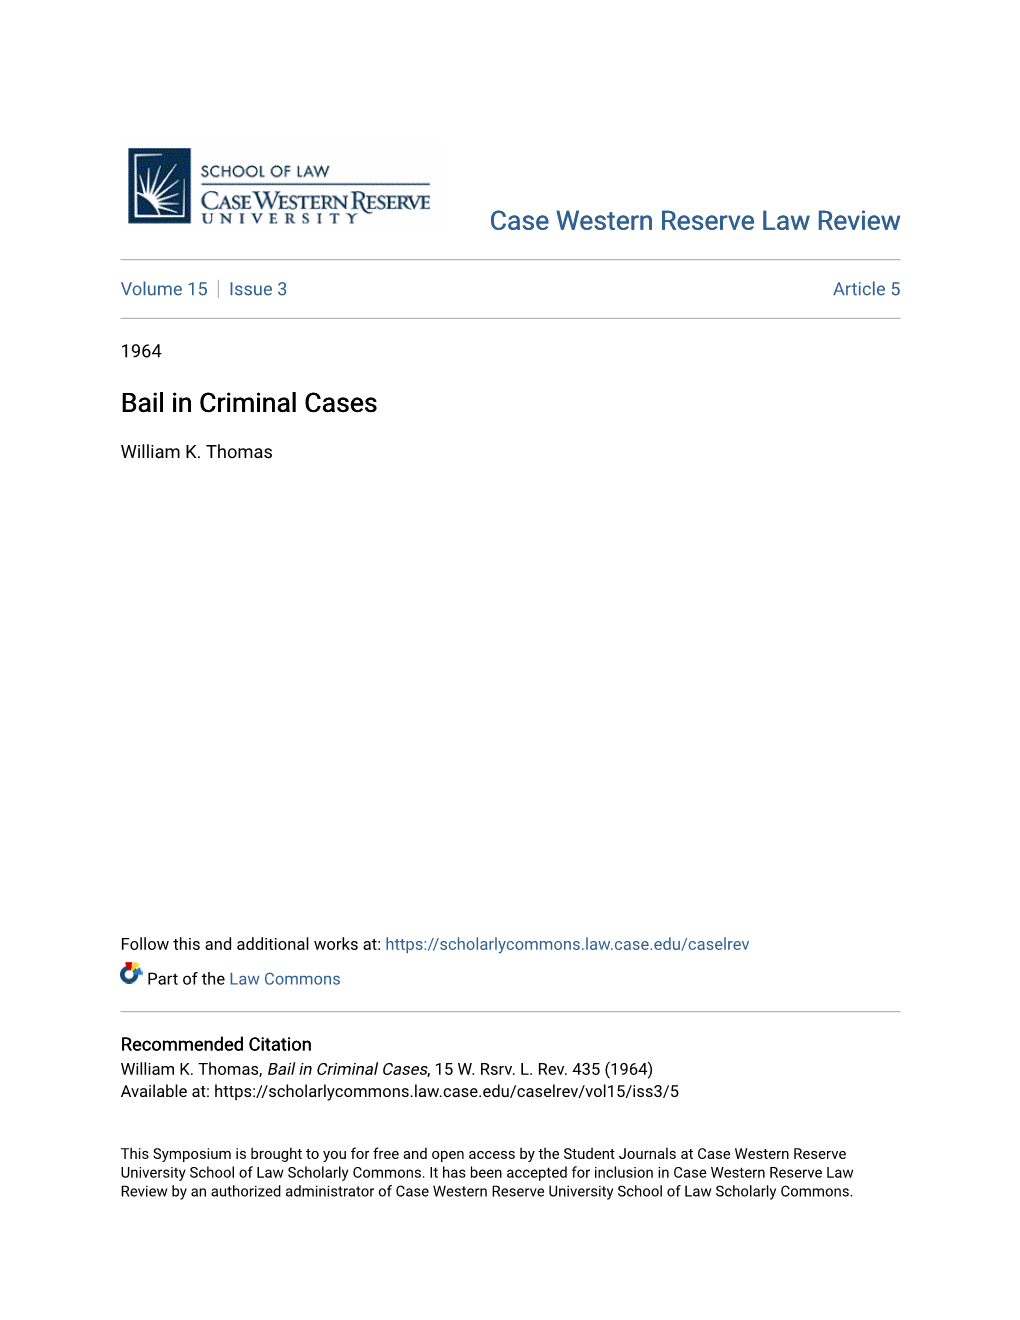 Bail in Criminal Cases